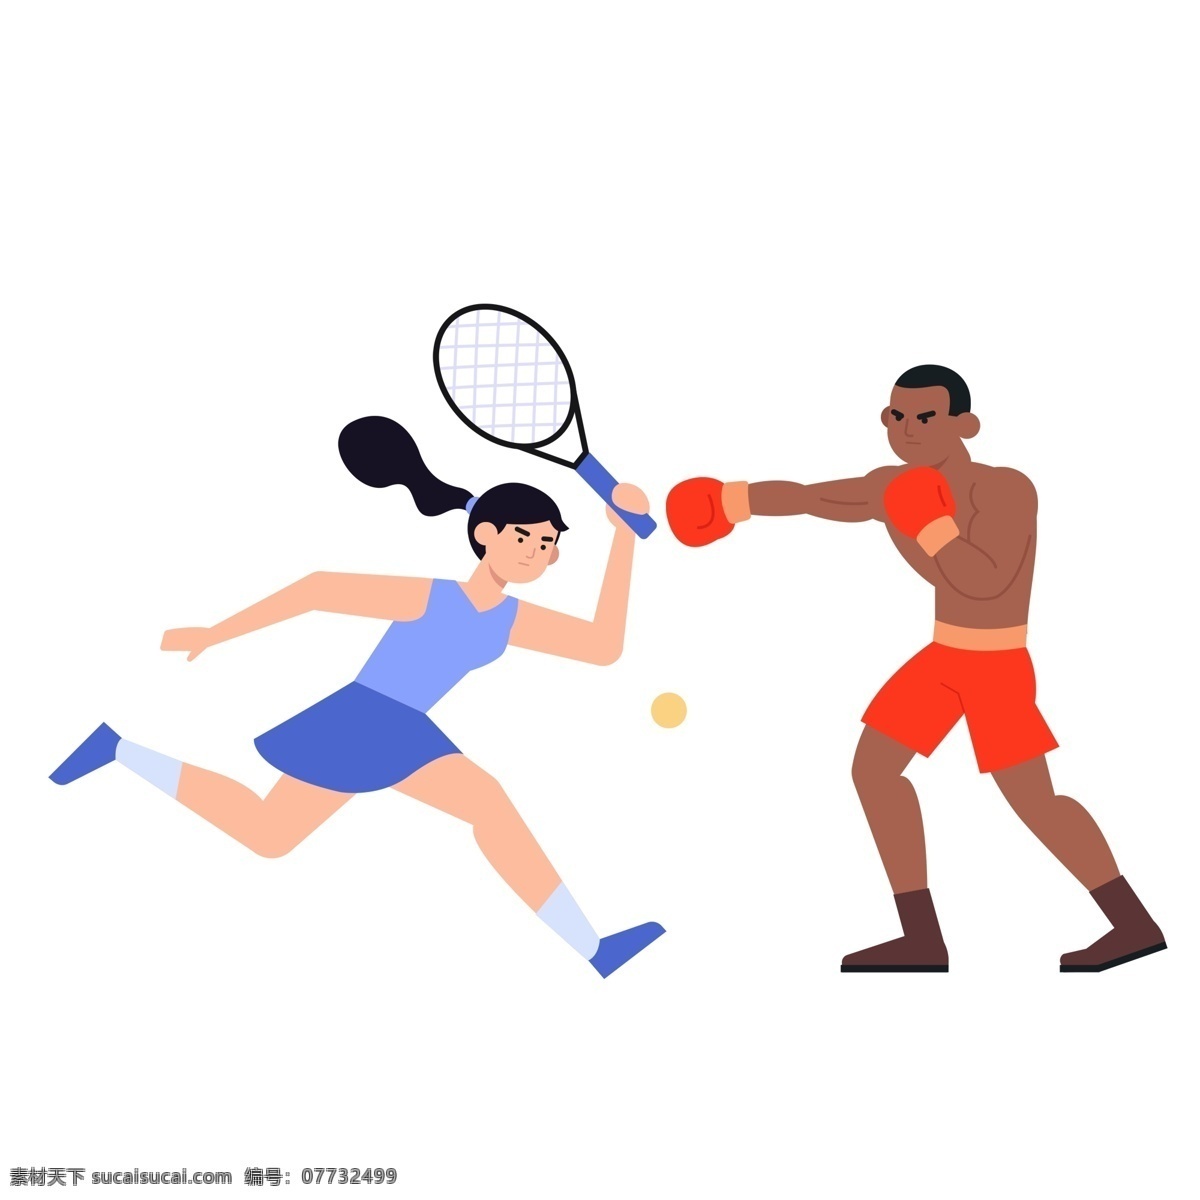 运动 网球 拳击 扁平 风 人物 扁平分人物 插画人物 banner 运动网球拳击 可爱的人物 可爱简约人物